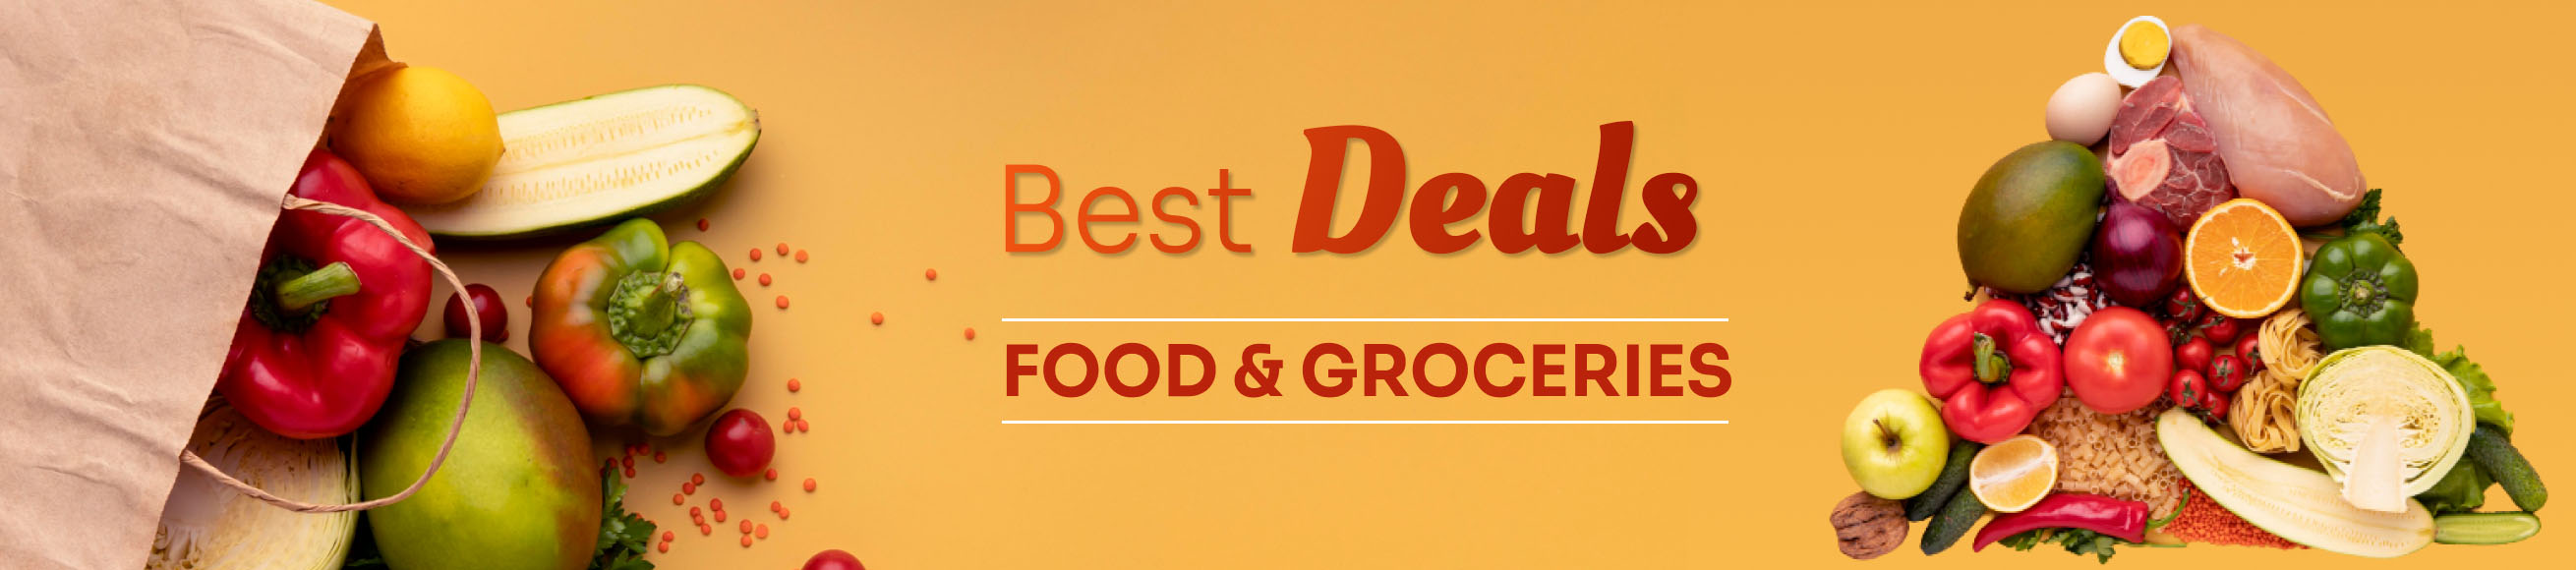 Food & Groceries Best Deals